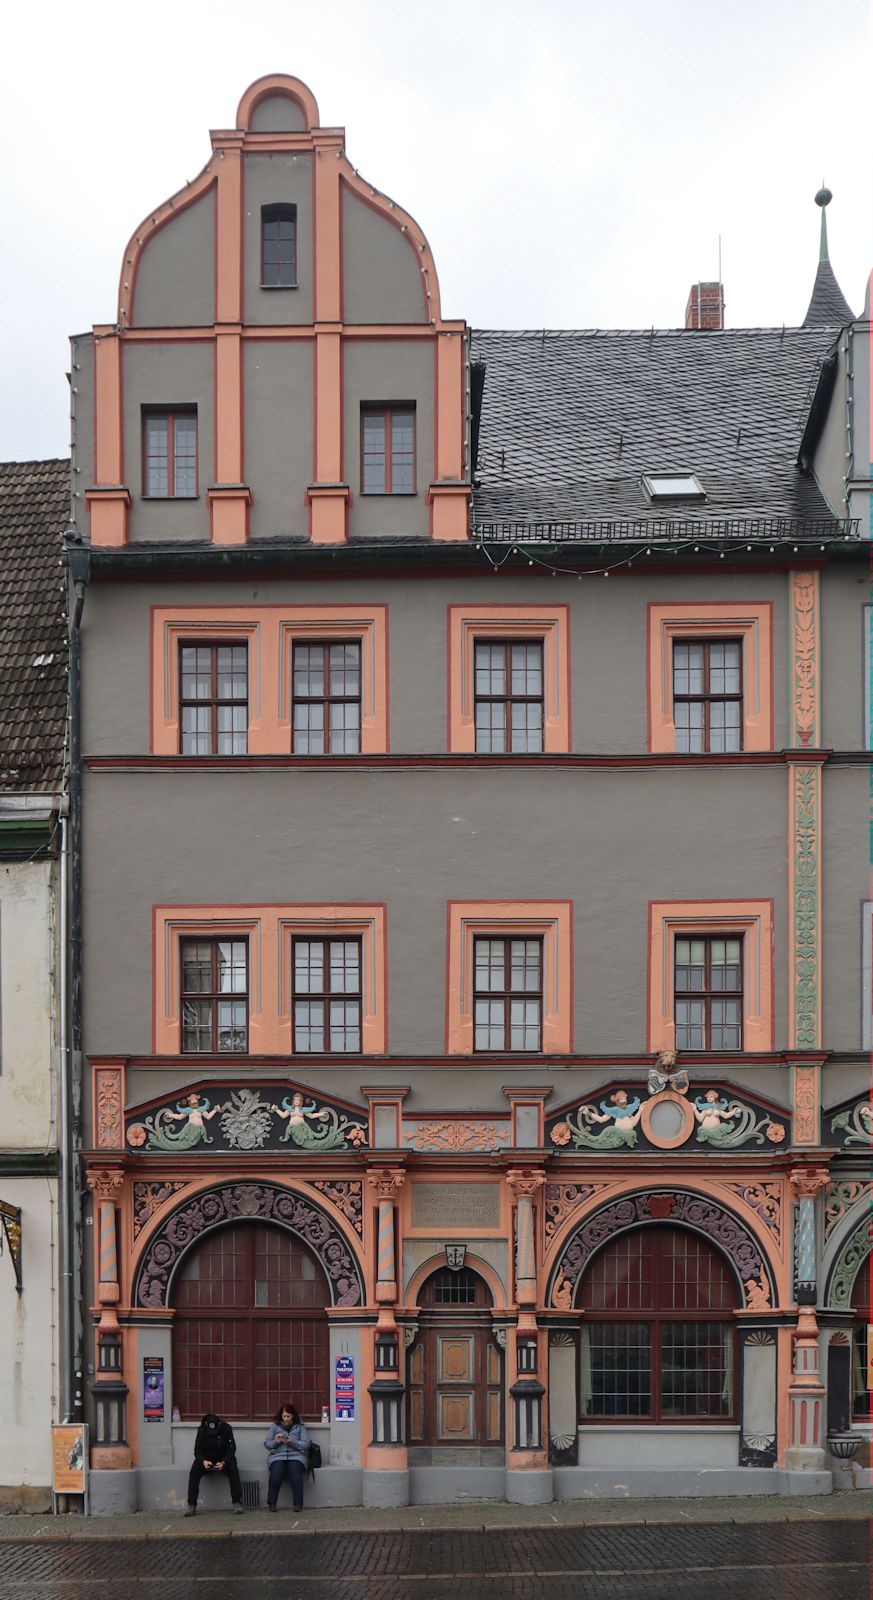 Cranachs Wohnhaus in Weimar